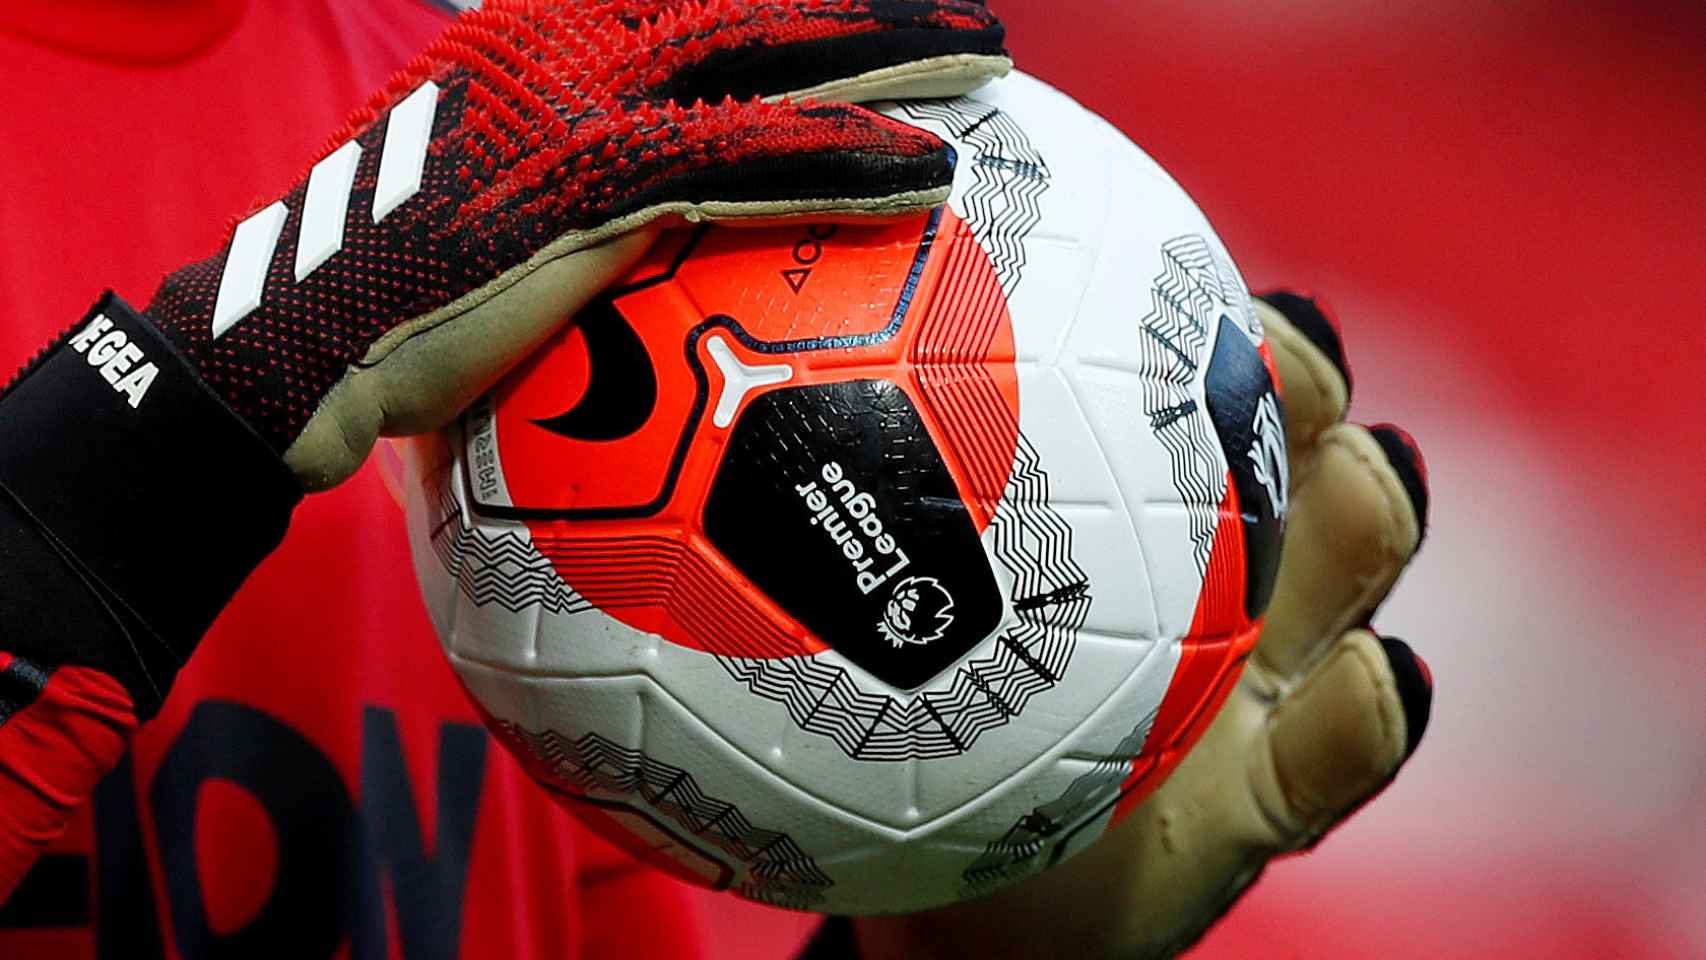 El balón de la Premier League